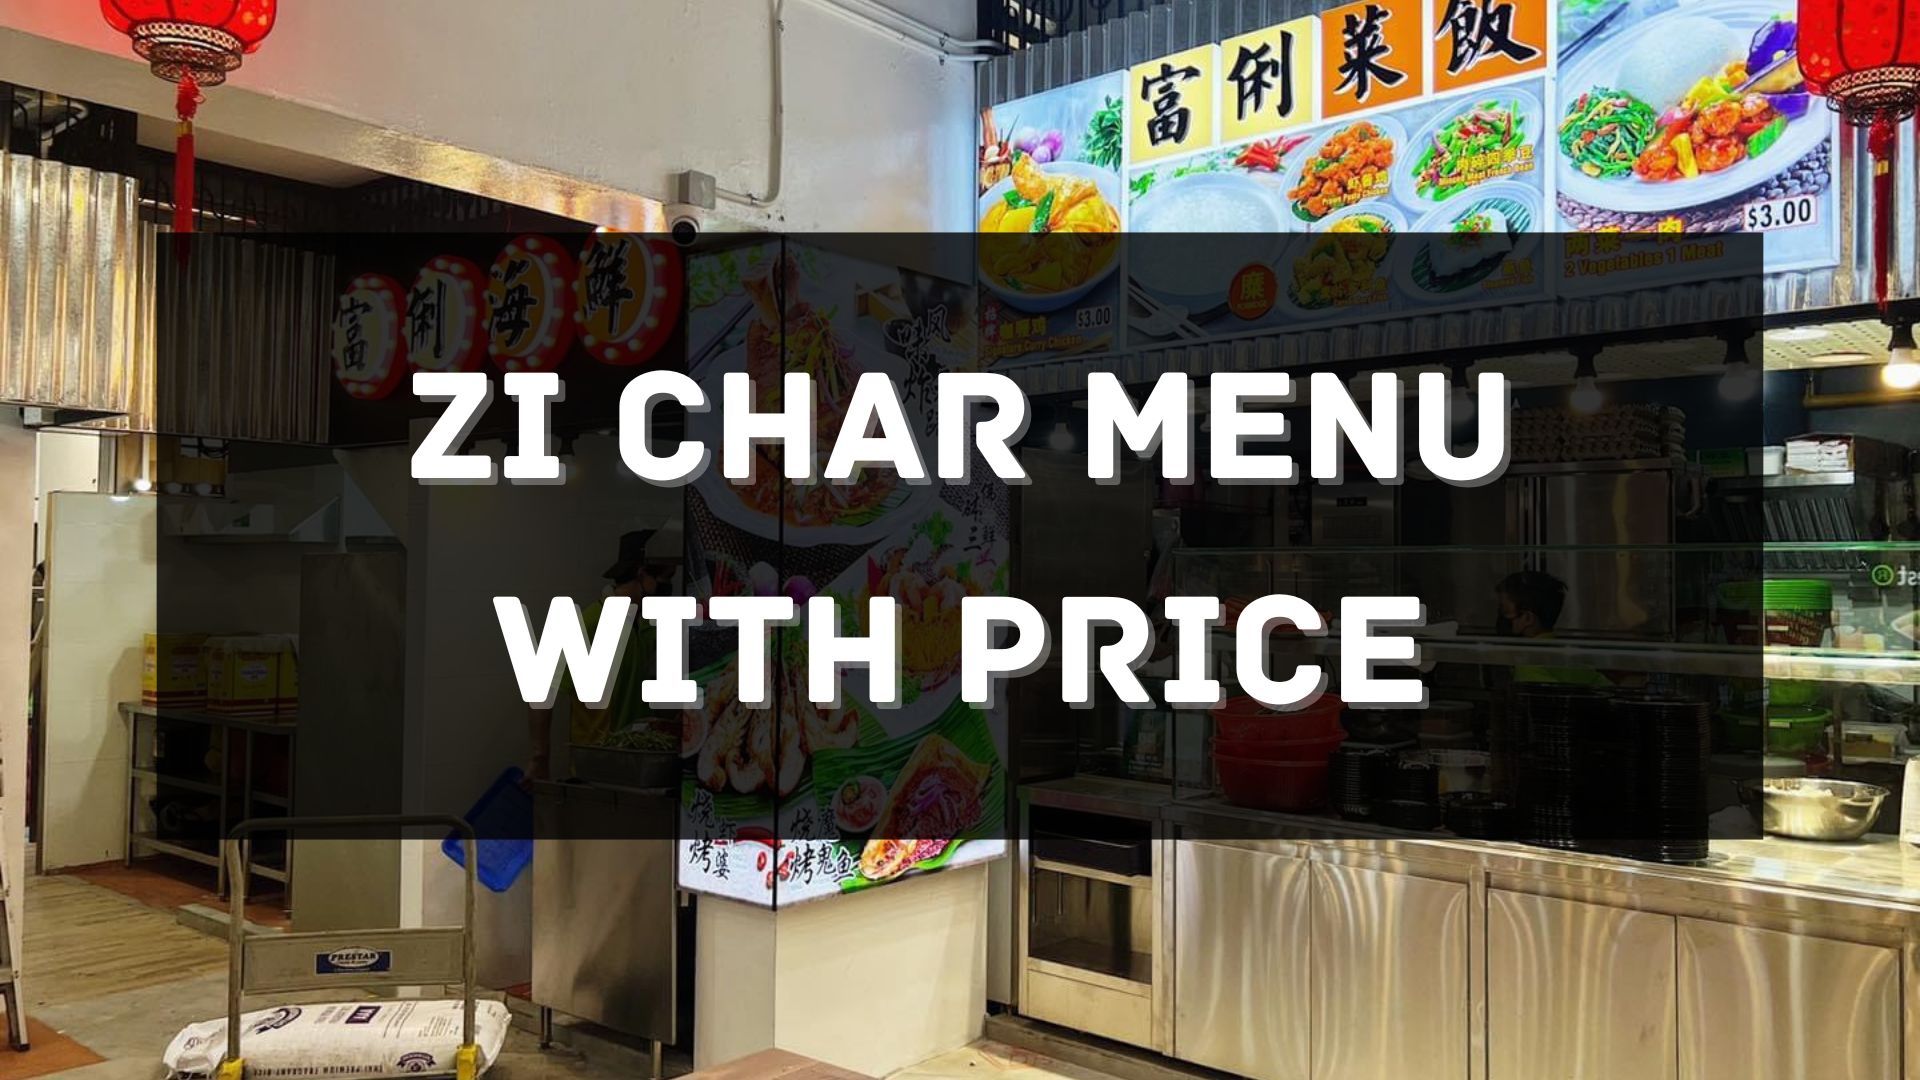 zi char menu prices singapore